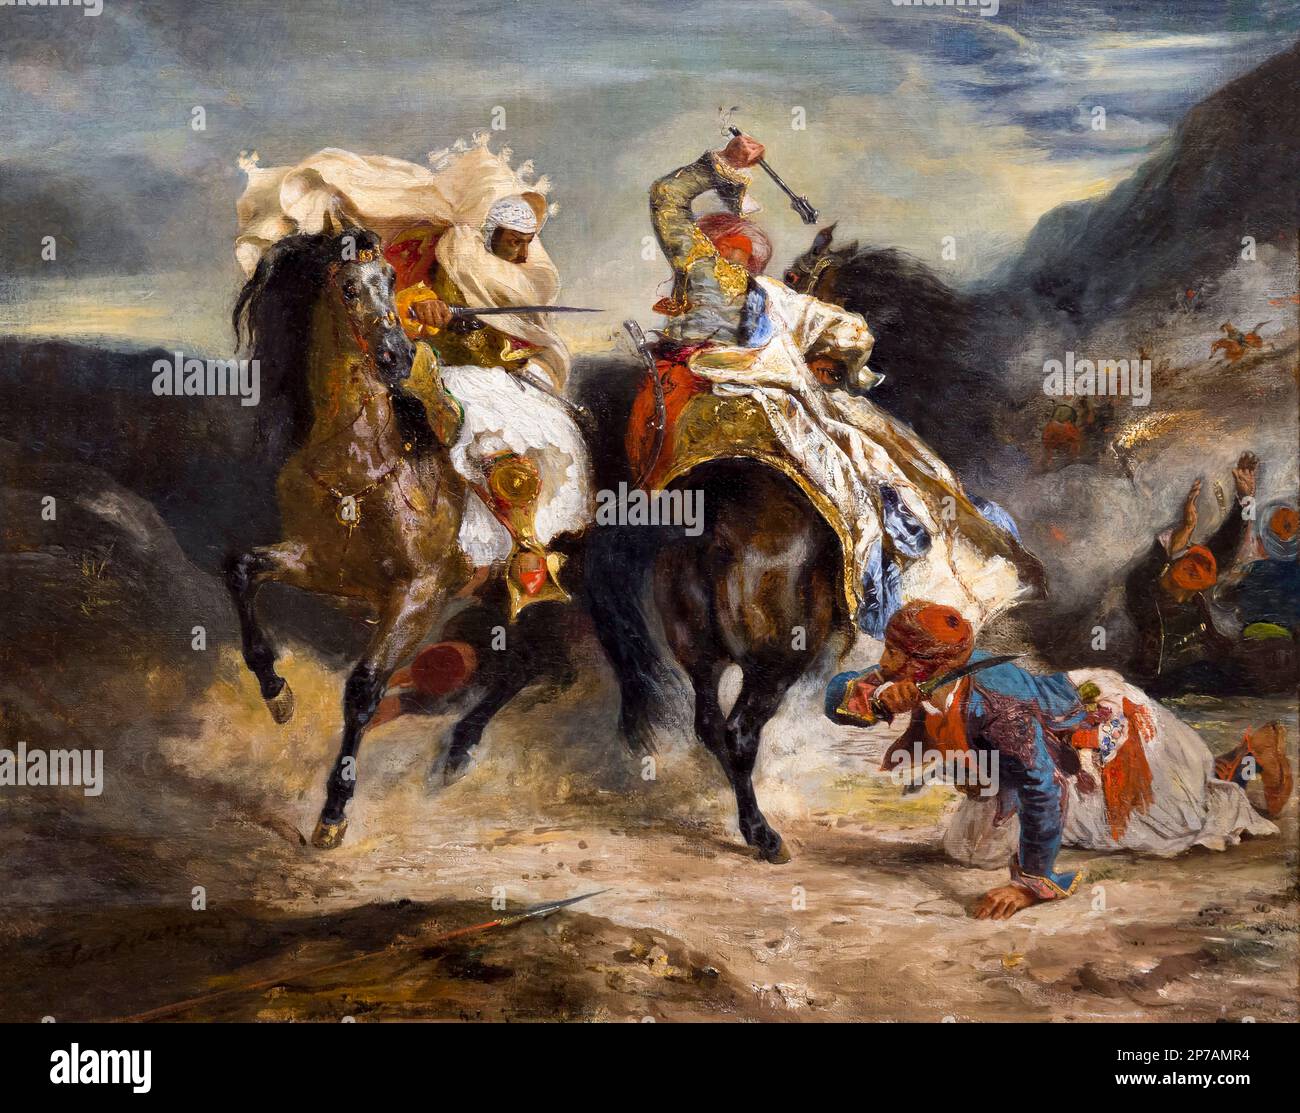 Le combat de l'Giaour et Hassan, Eugène Delacroix, 1826, Art Institute of Chicago, Chicago, Illinois, USA, Amérique du Nord, Banque D'Images